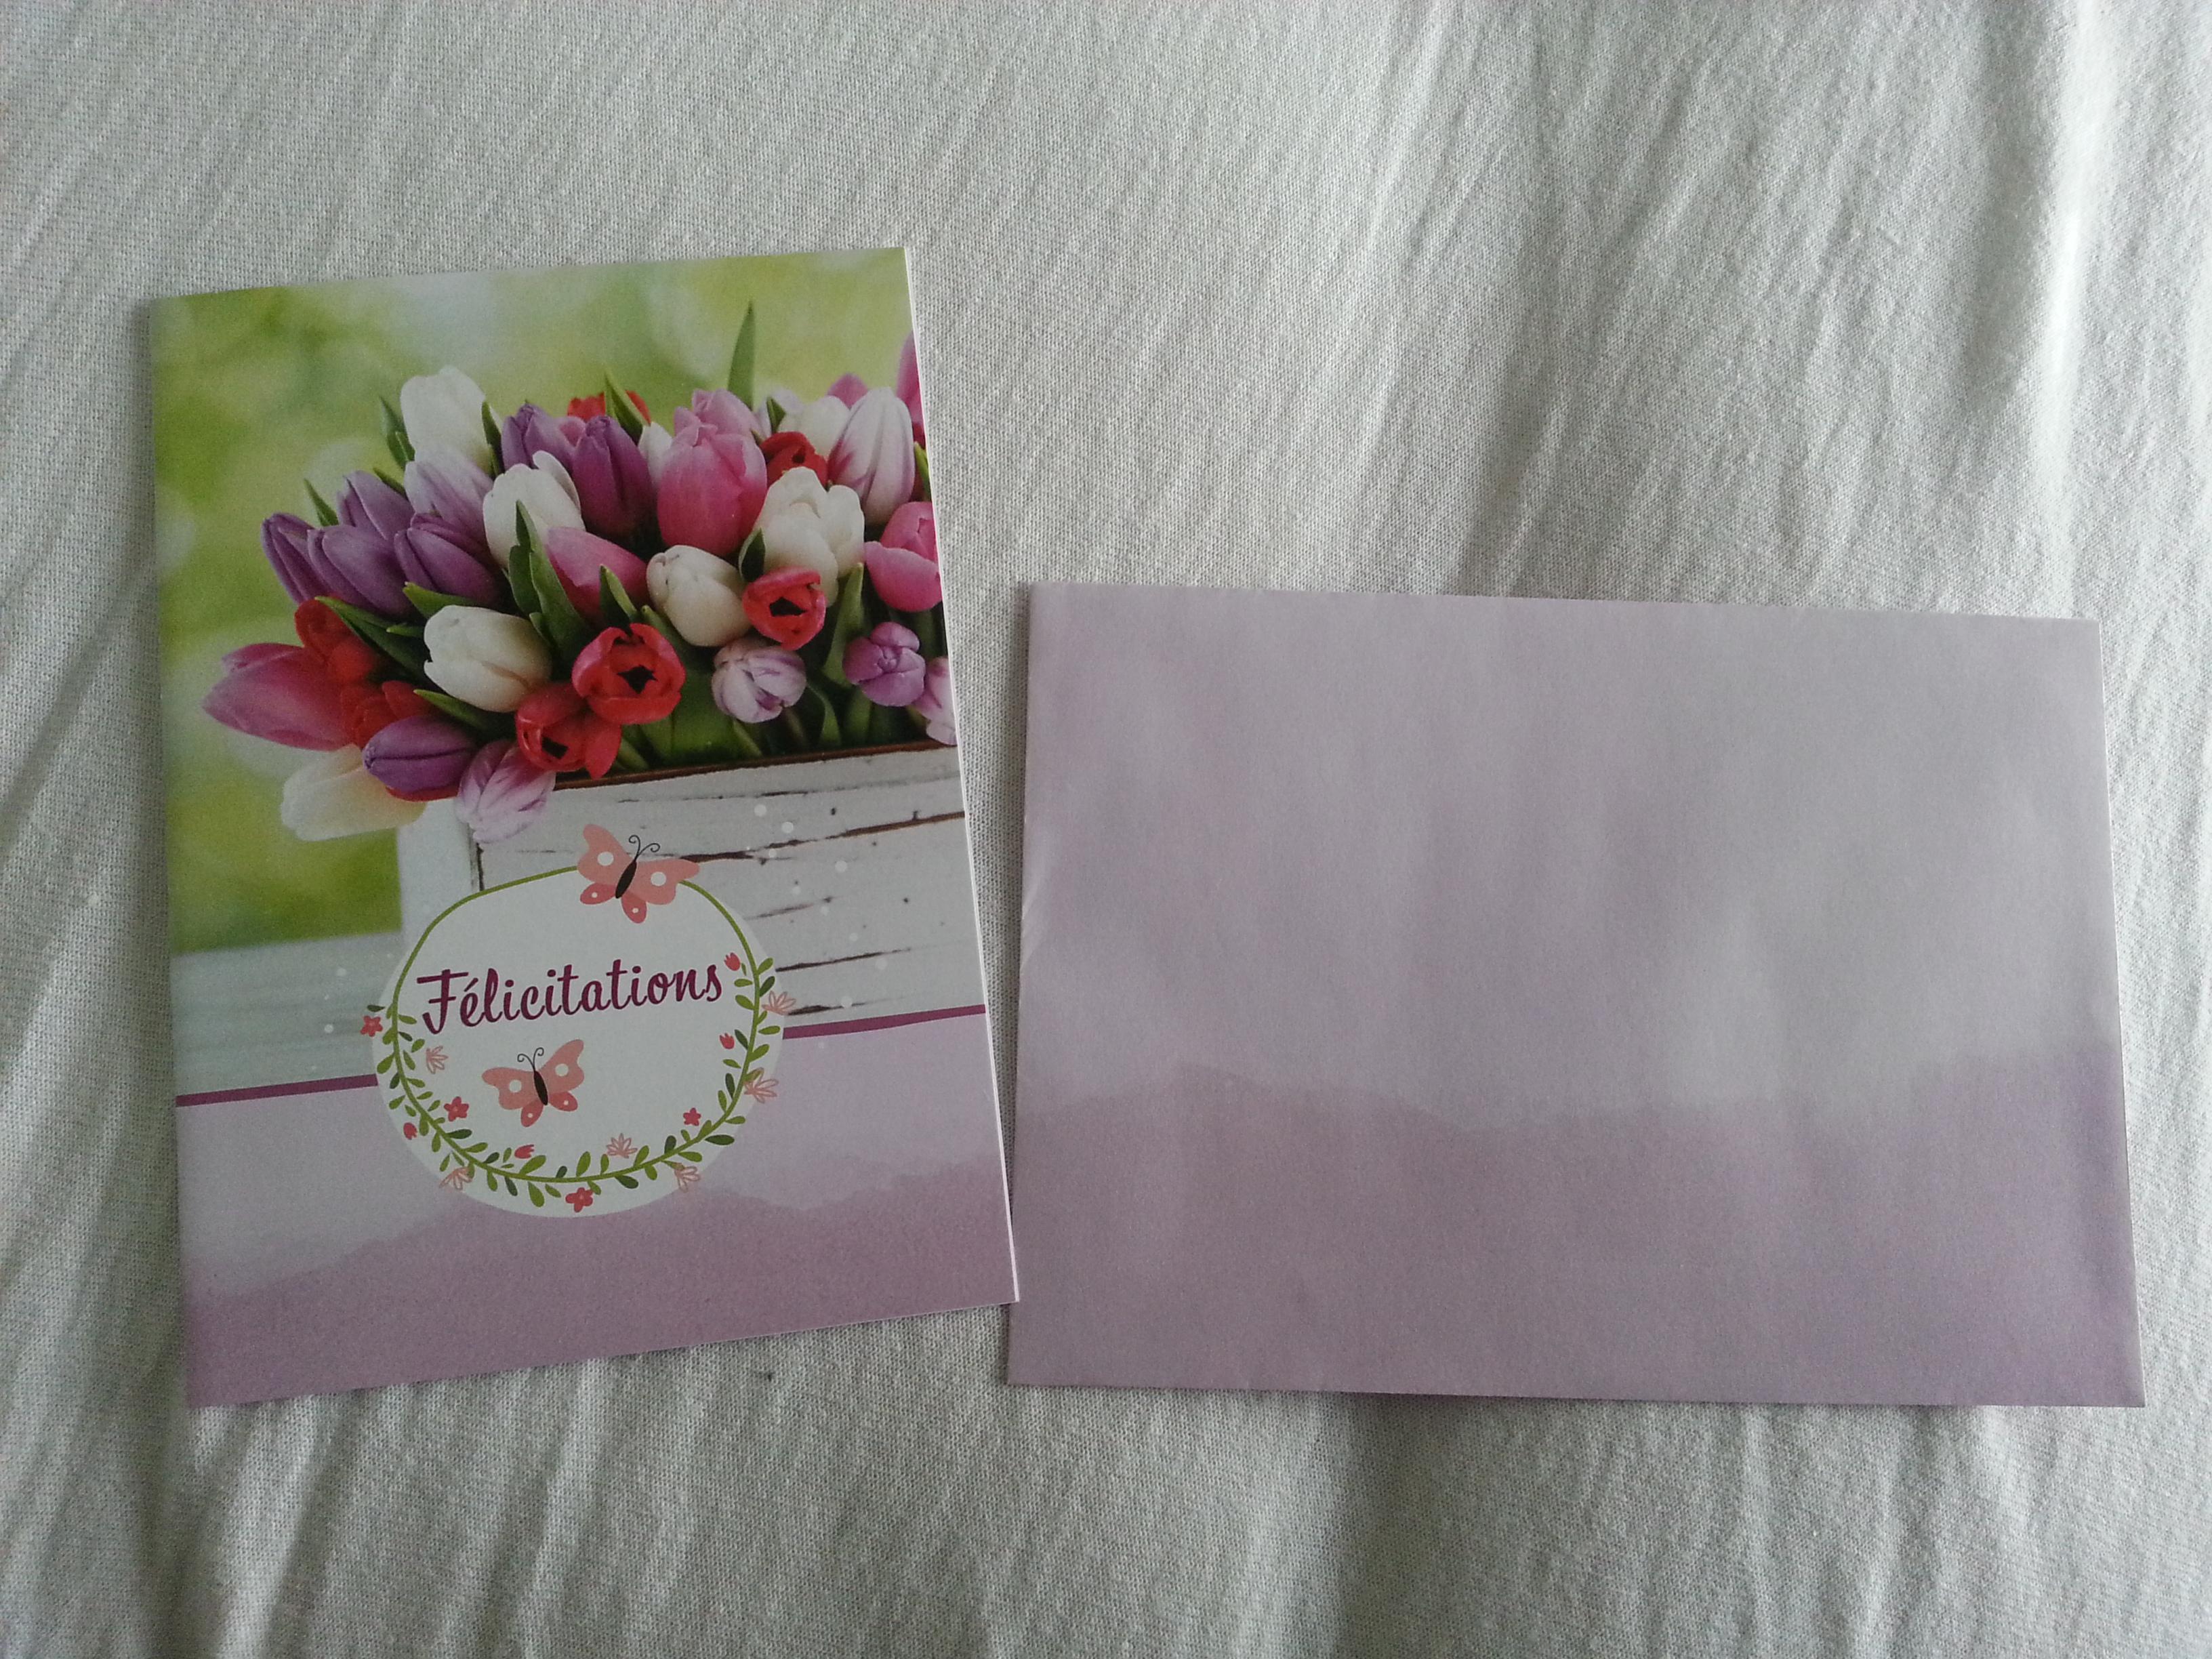 troc de troc carte felicitations bac de tulipes multicolores & son enveloppe image 0